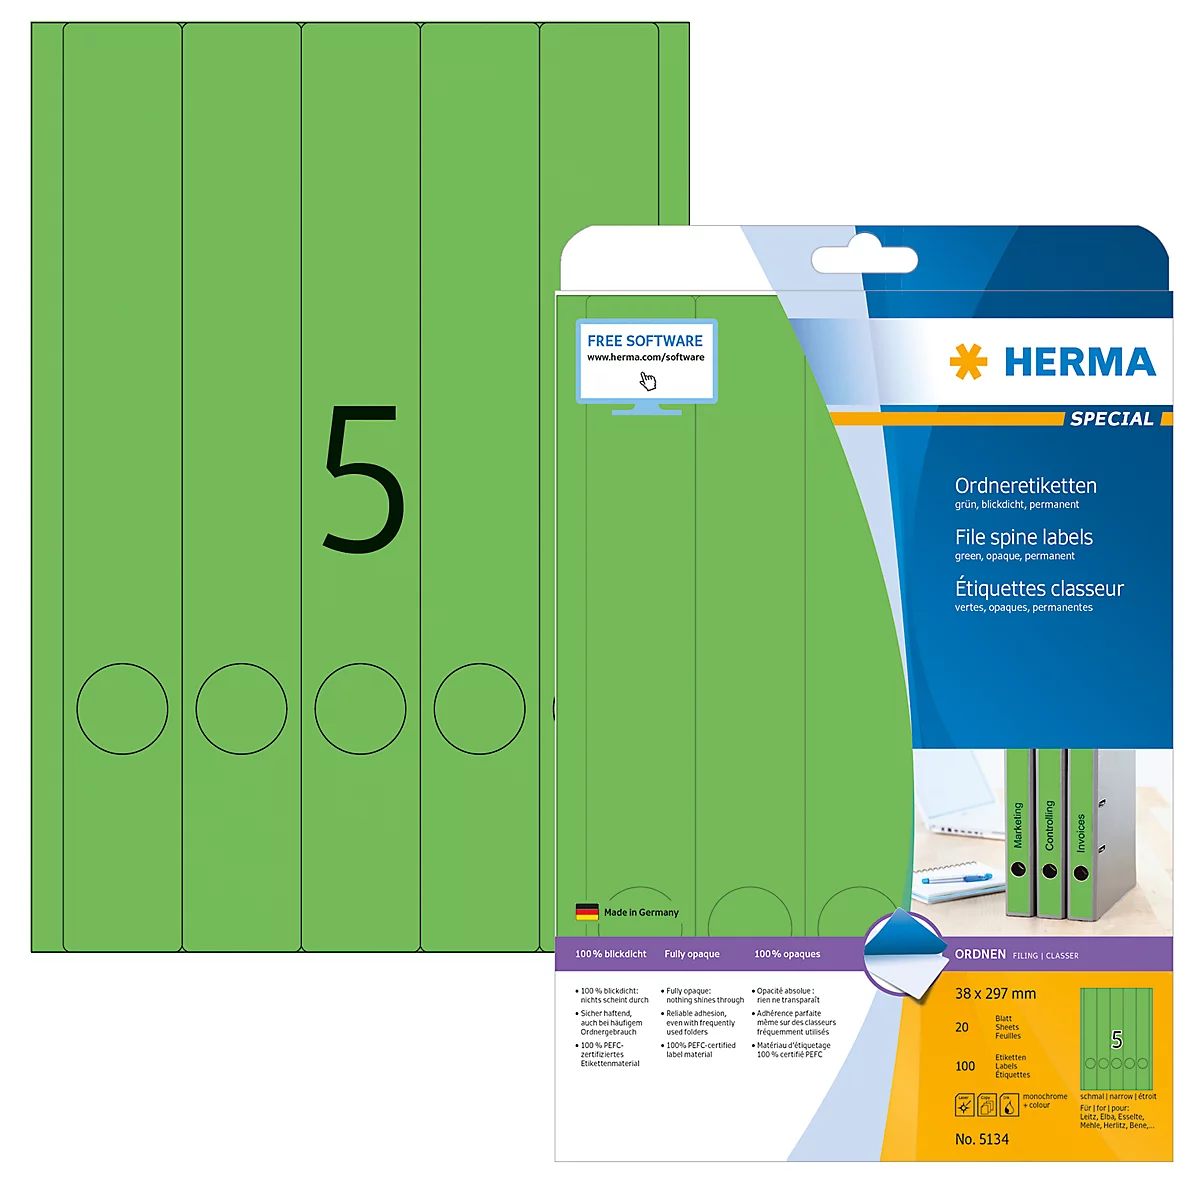 Herma Ordneretiketten A4, 297 mm lang, permanent haftend/bedruckbar, 100 Stück, grün